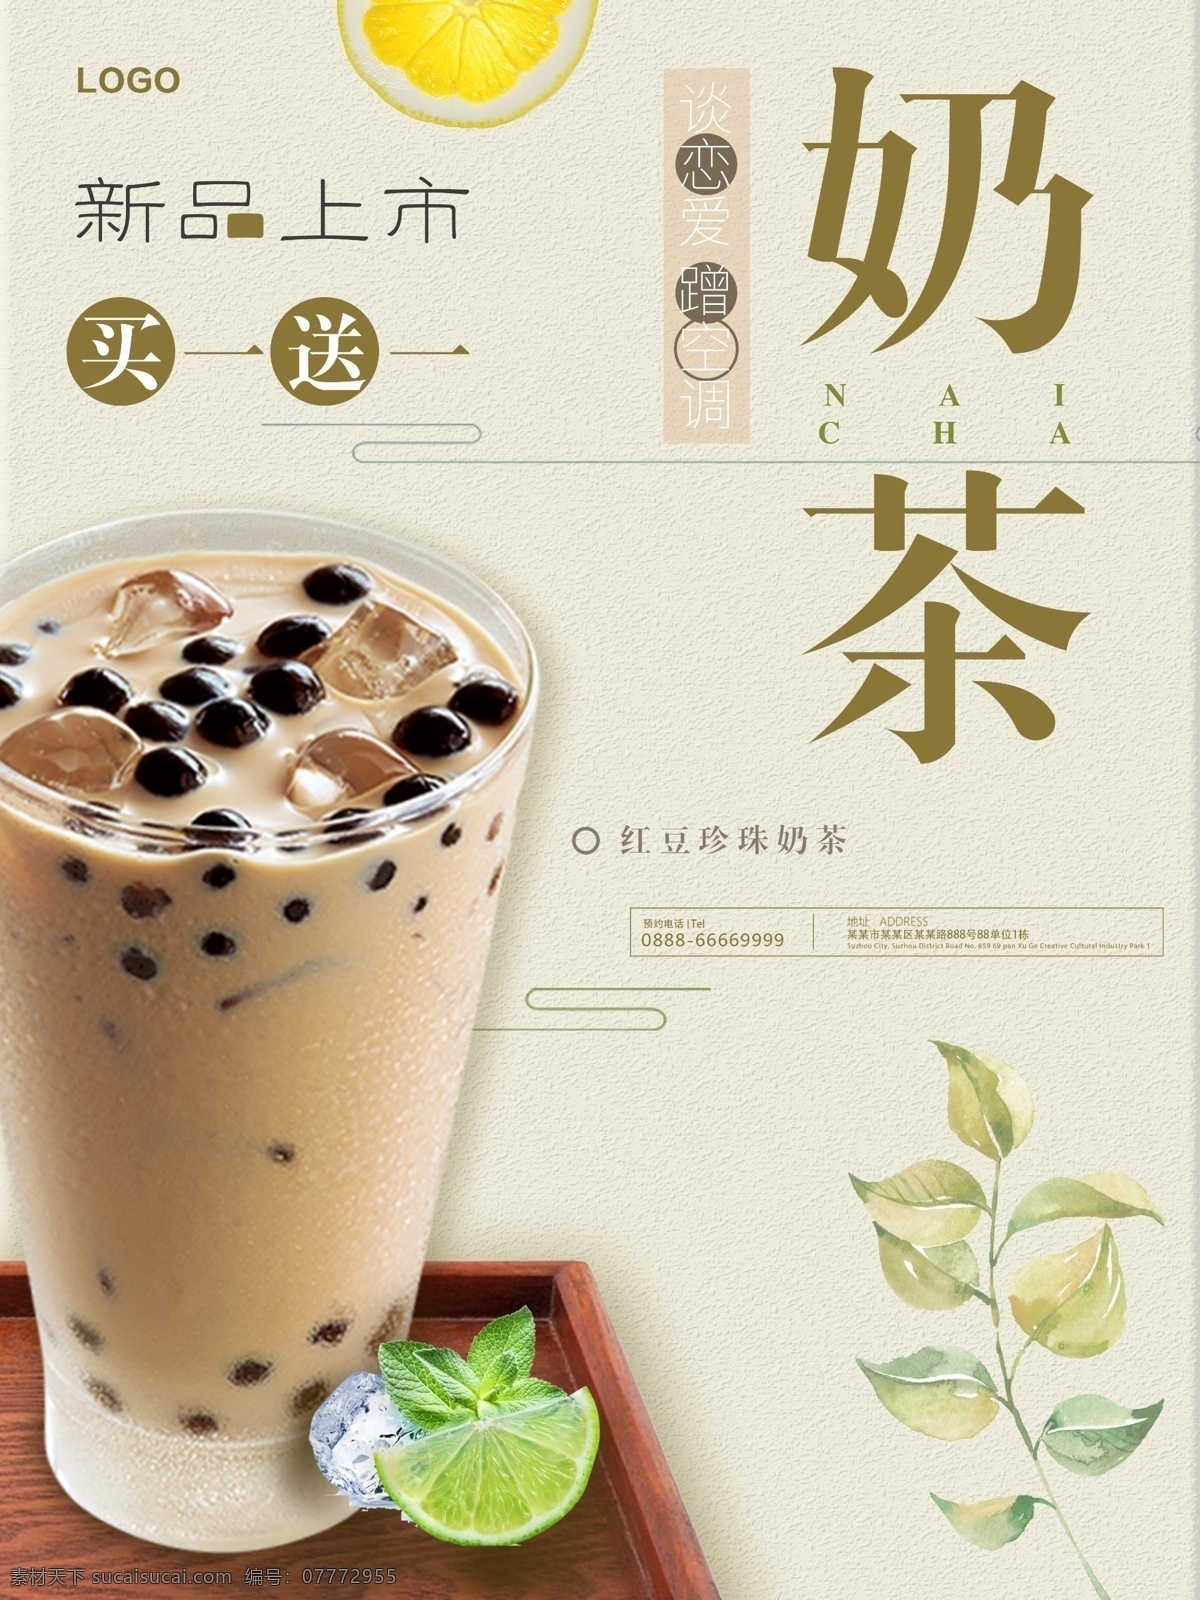 茶色 绿色 简约 清新 茶饮 活动 奶茶 促销 海报 模板 抹茶 奶盖 绿茶 饮品